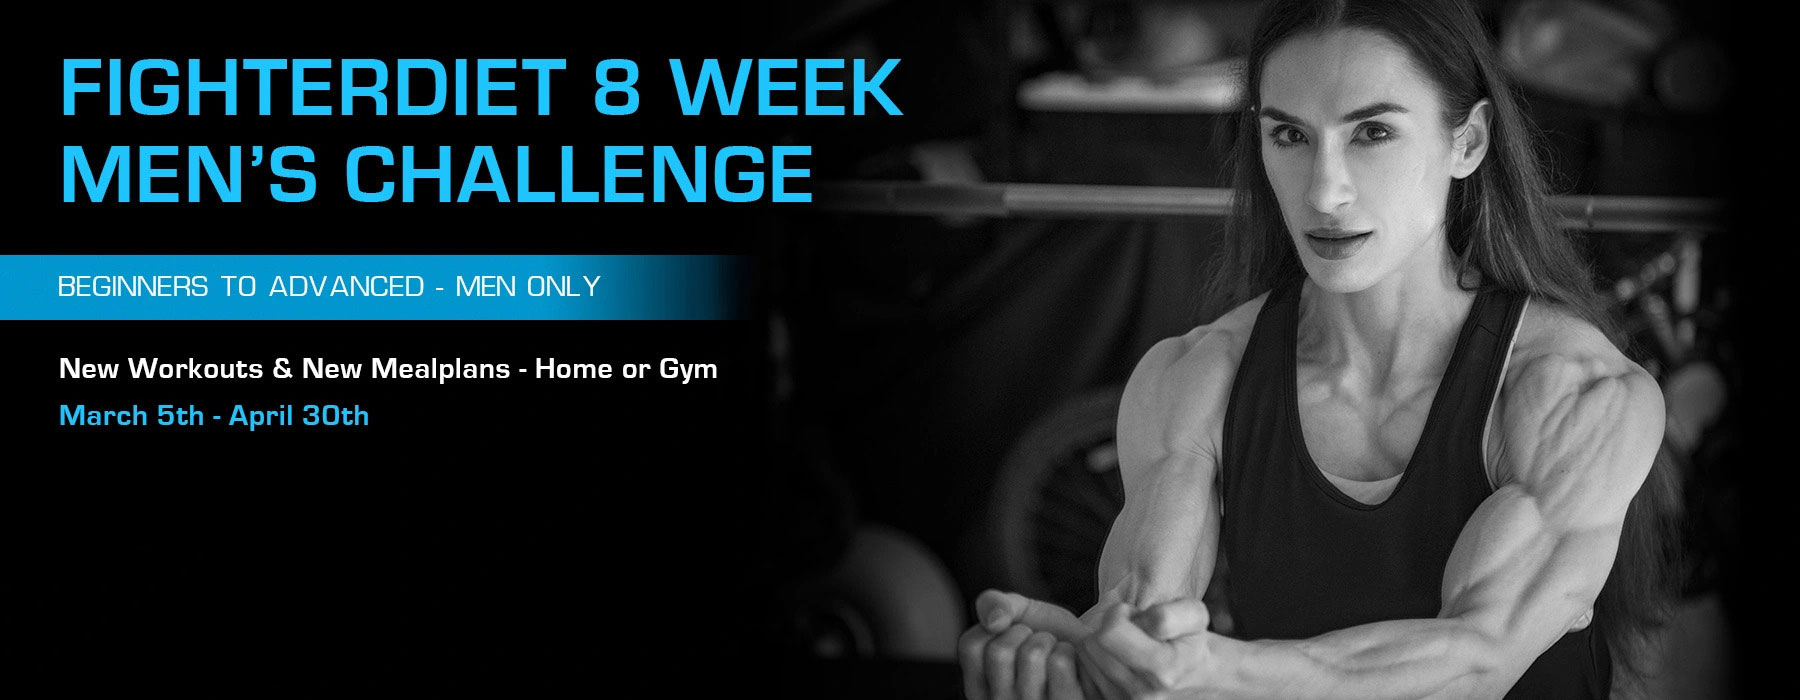 FD 8 week men's challenge